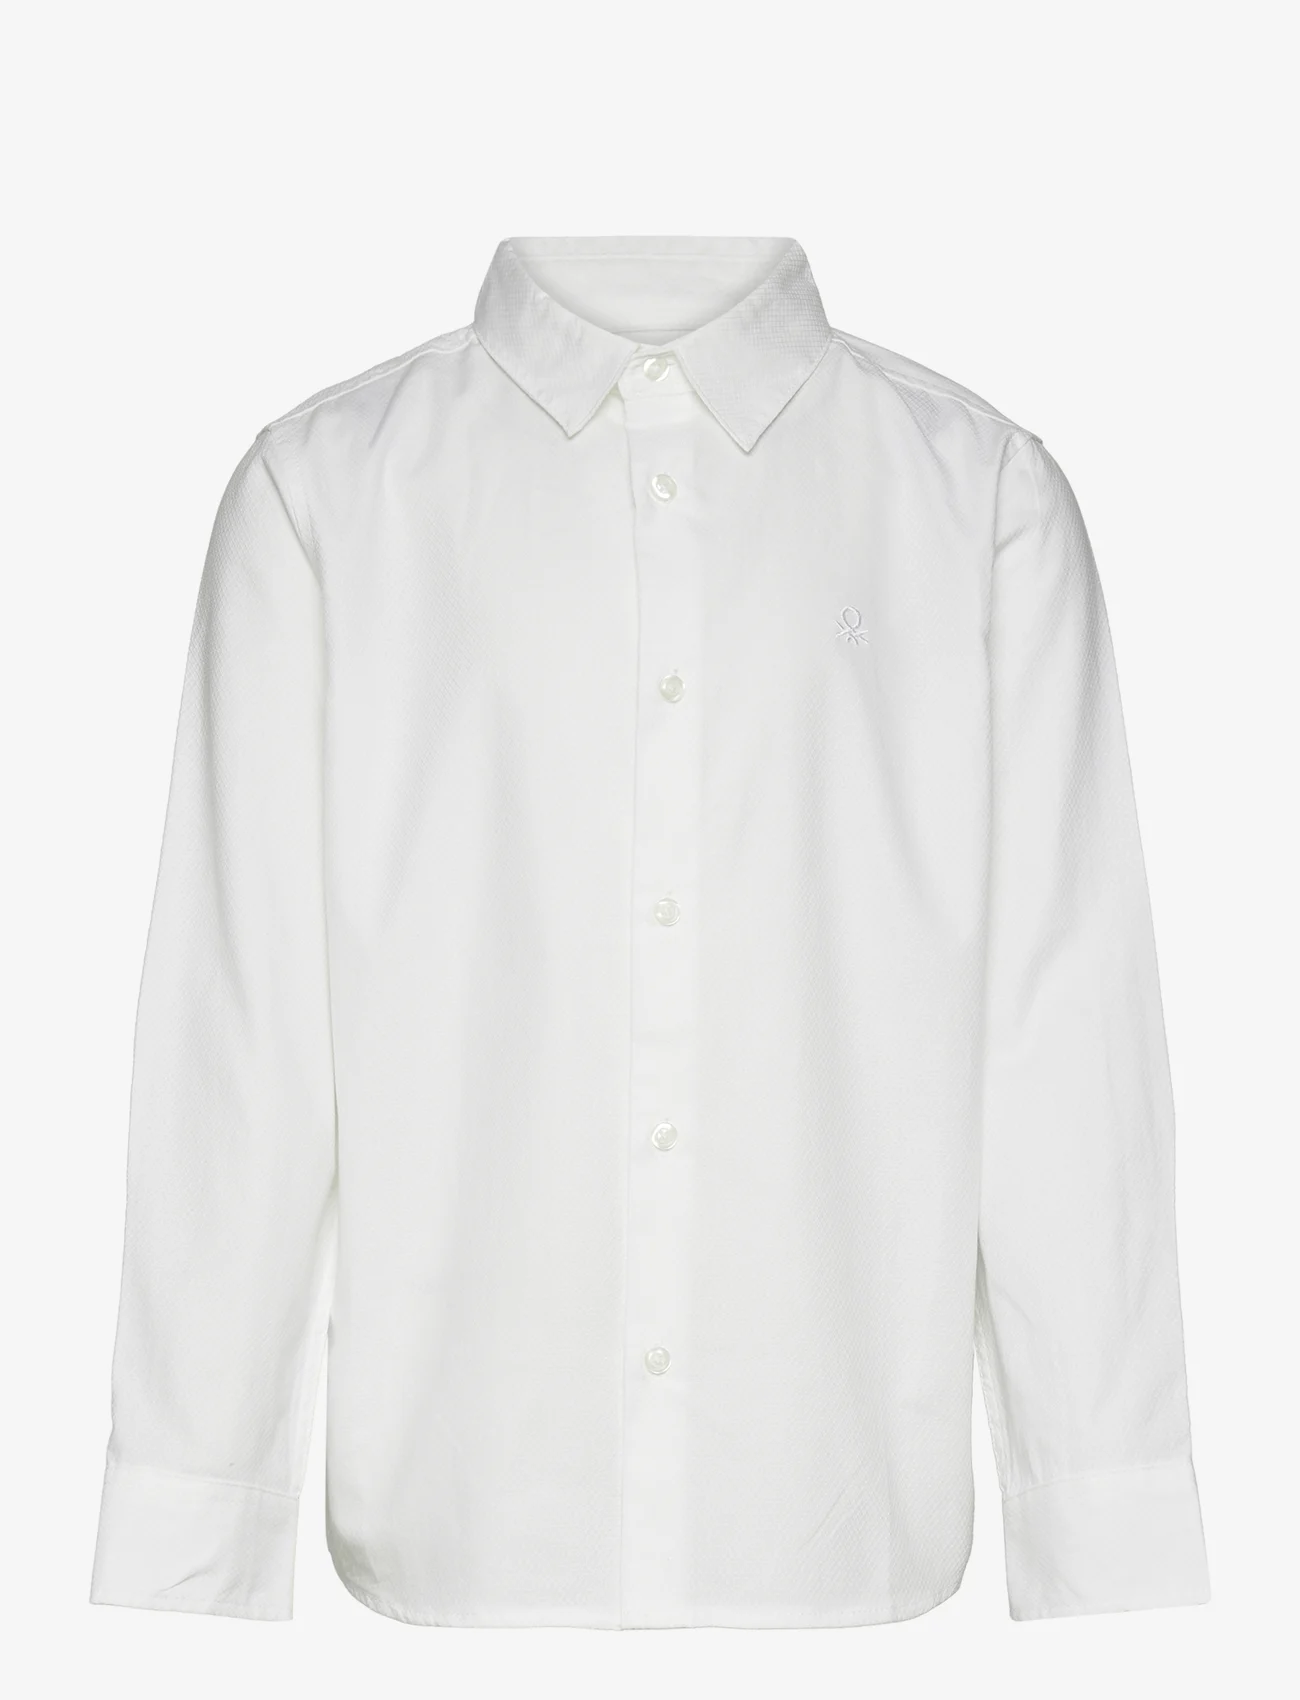 United Colors of Benetton - SHIRT - langærmede skjorter - white - 0